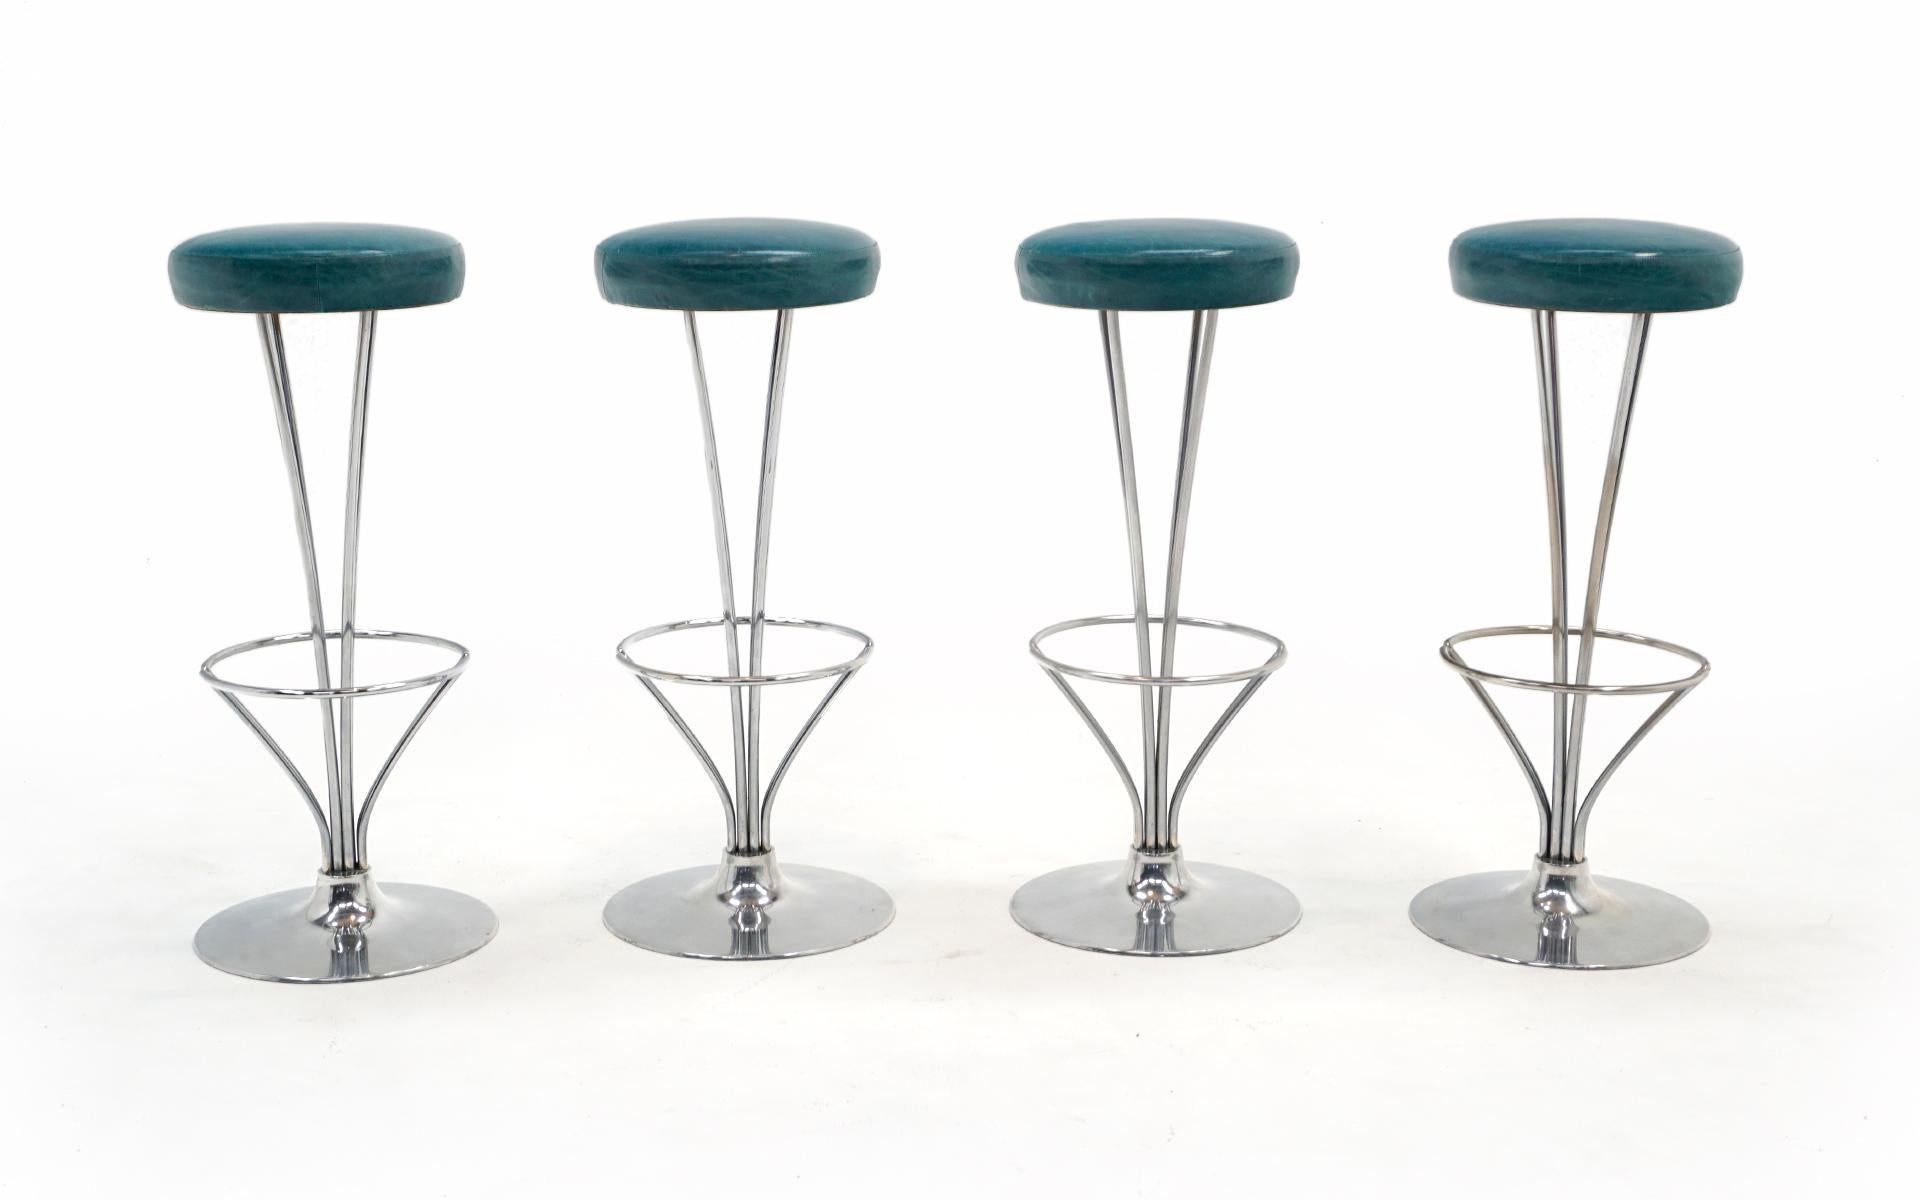 Satz von 4 Barhockern, entworfen von Piet Hein für Fritz Hansen, Dänemark, 1960er Jahre. Die Sitze wurden in jüngster Vergangenheit mit hochwertigem türkisblauem Leder neu gepolstert. Die Gestelle sind aus Aluminiumguss und verchromtem Stahl